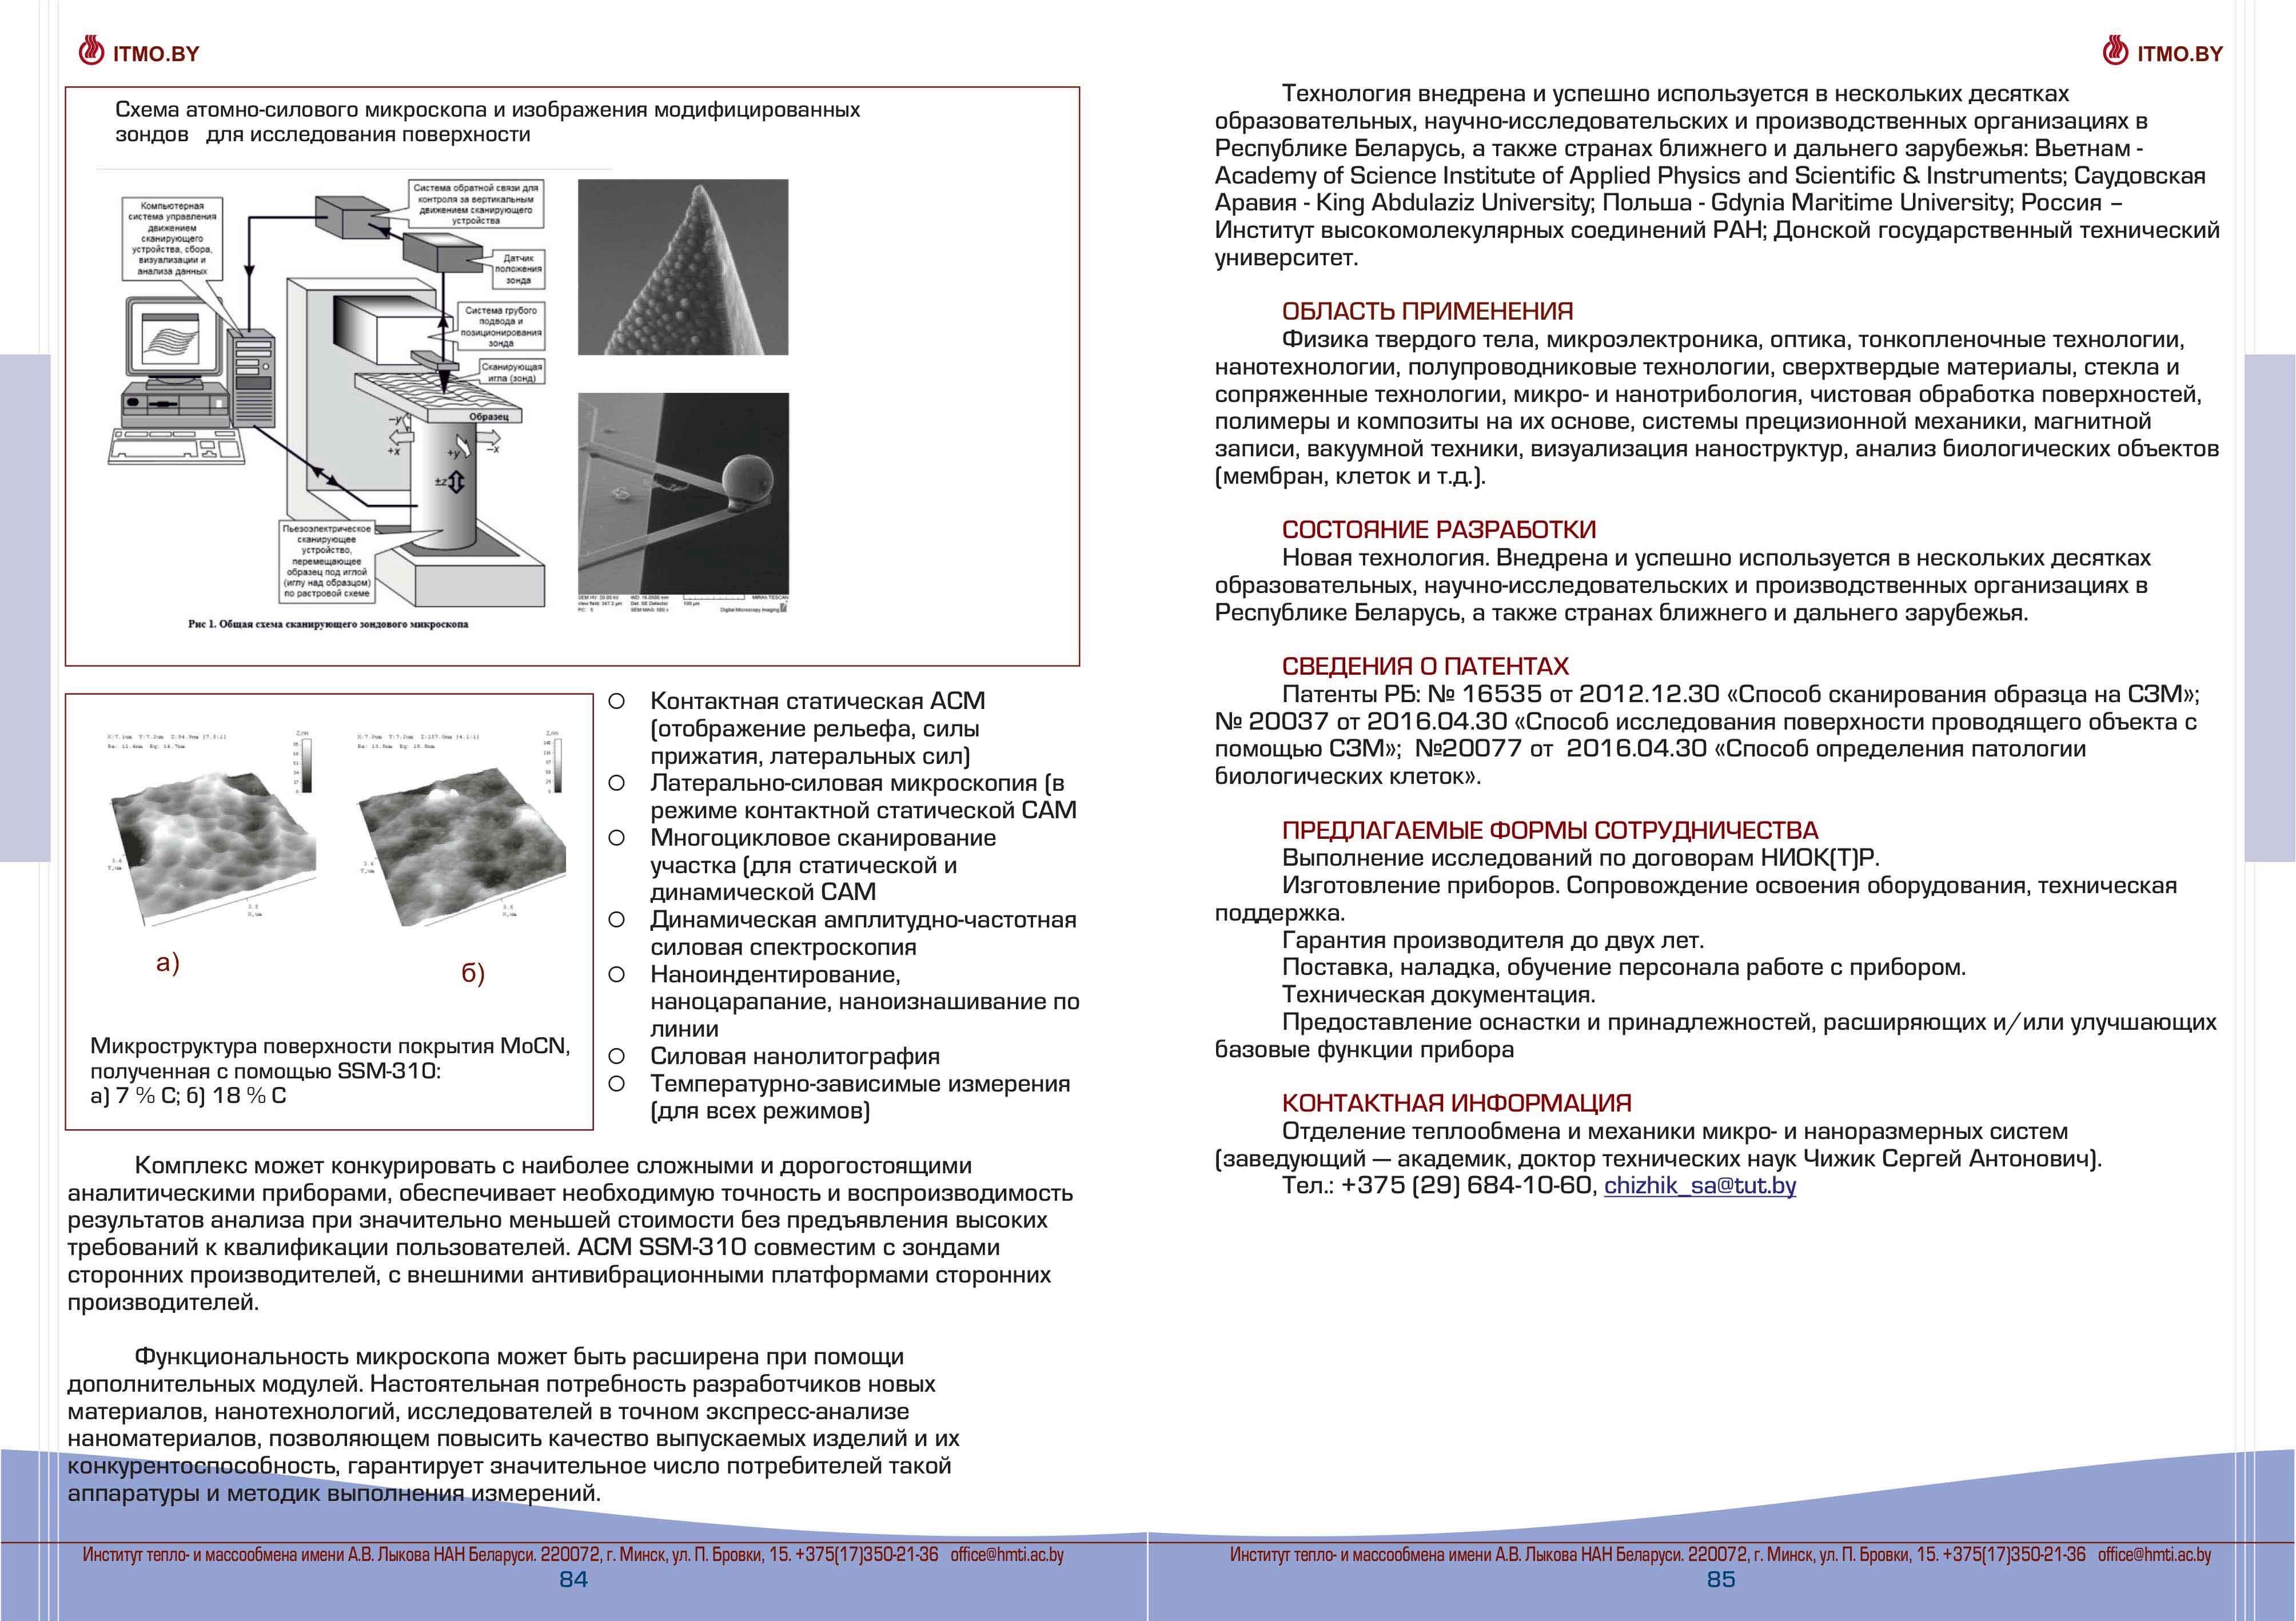 Хроматические исследования. Нанодиагностический комплекс с функциями сканирующей зондовой и оптической микроскопии